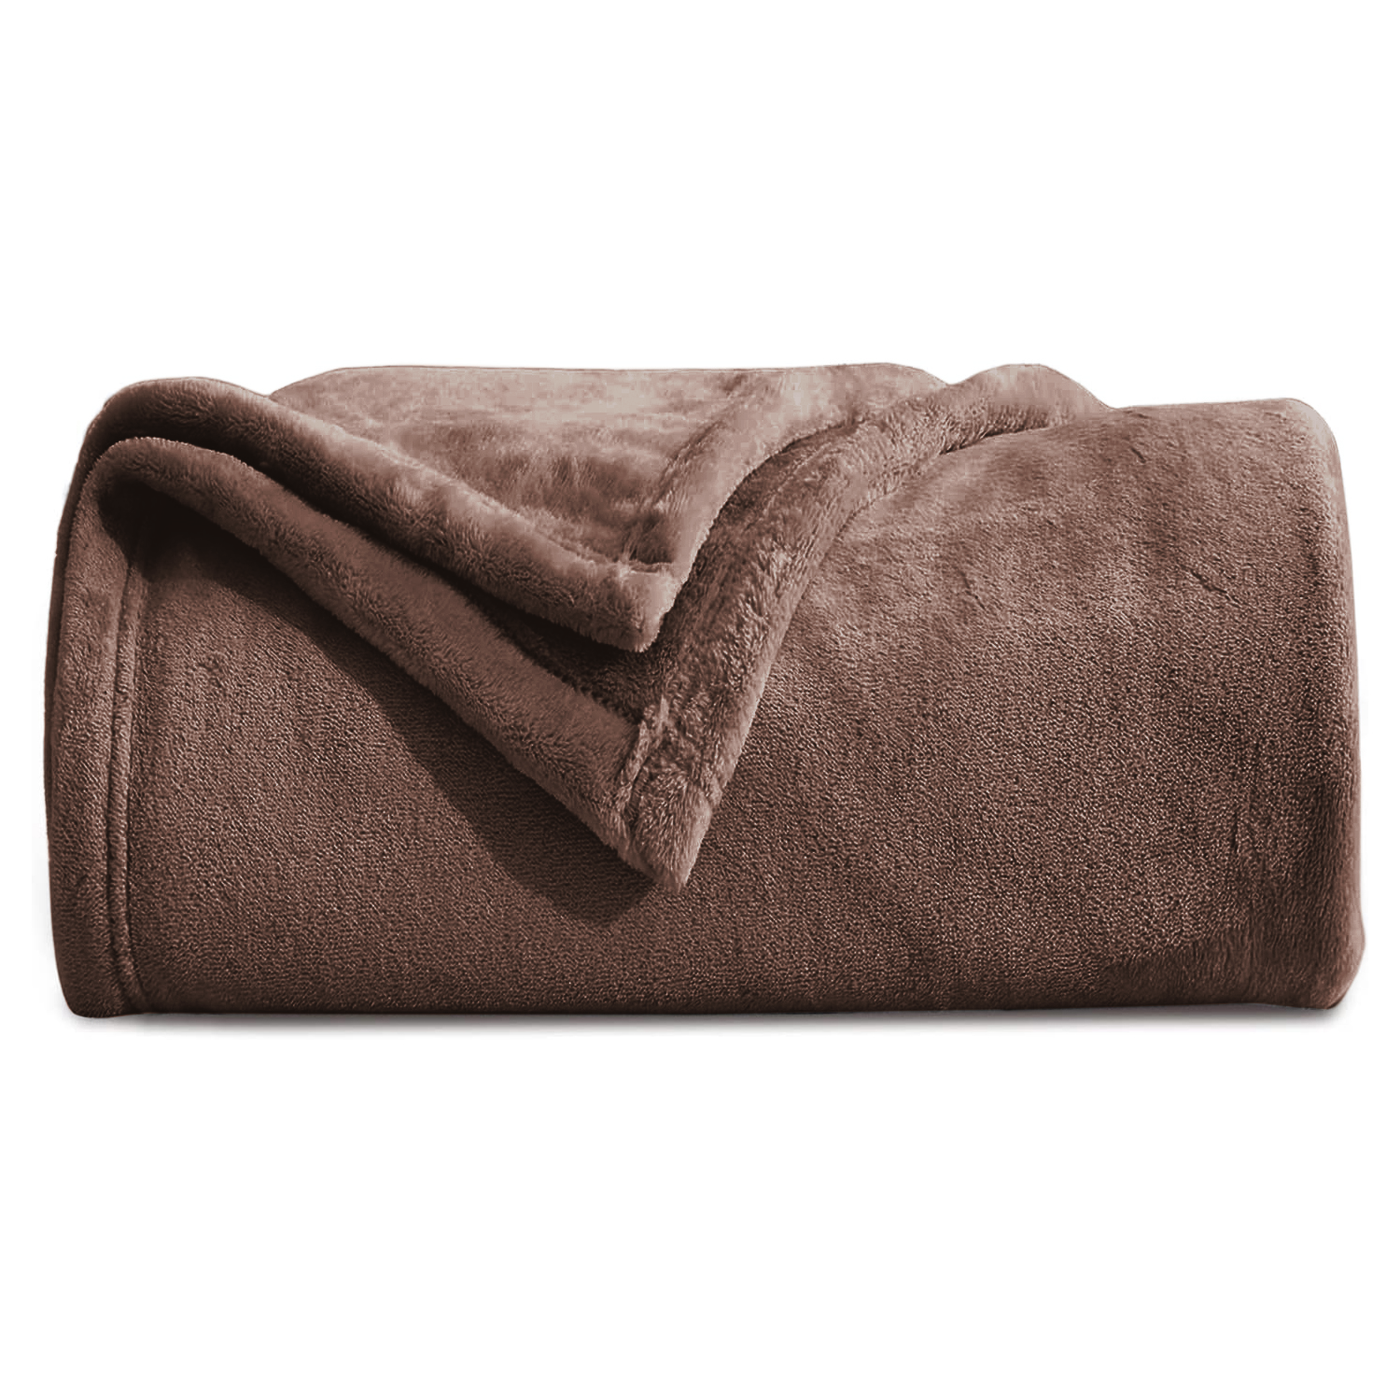 Fleece Throw Blankets Single Double King Size